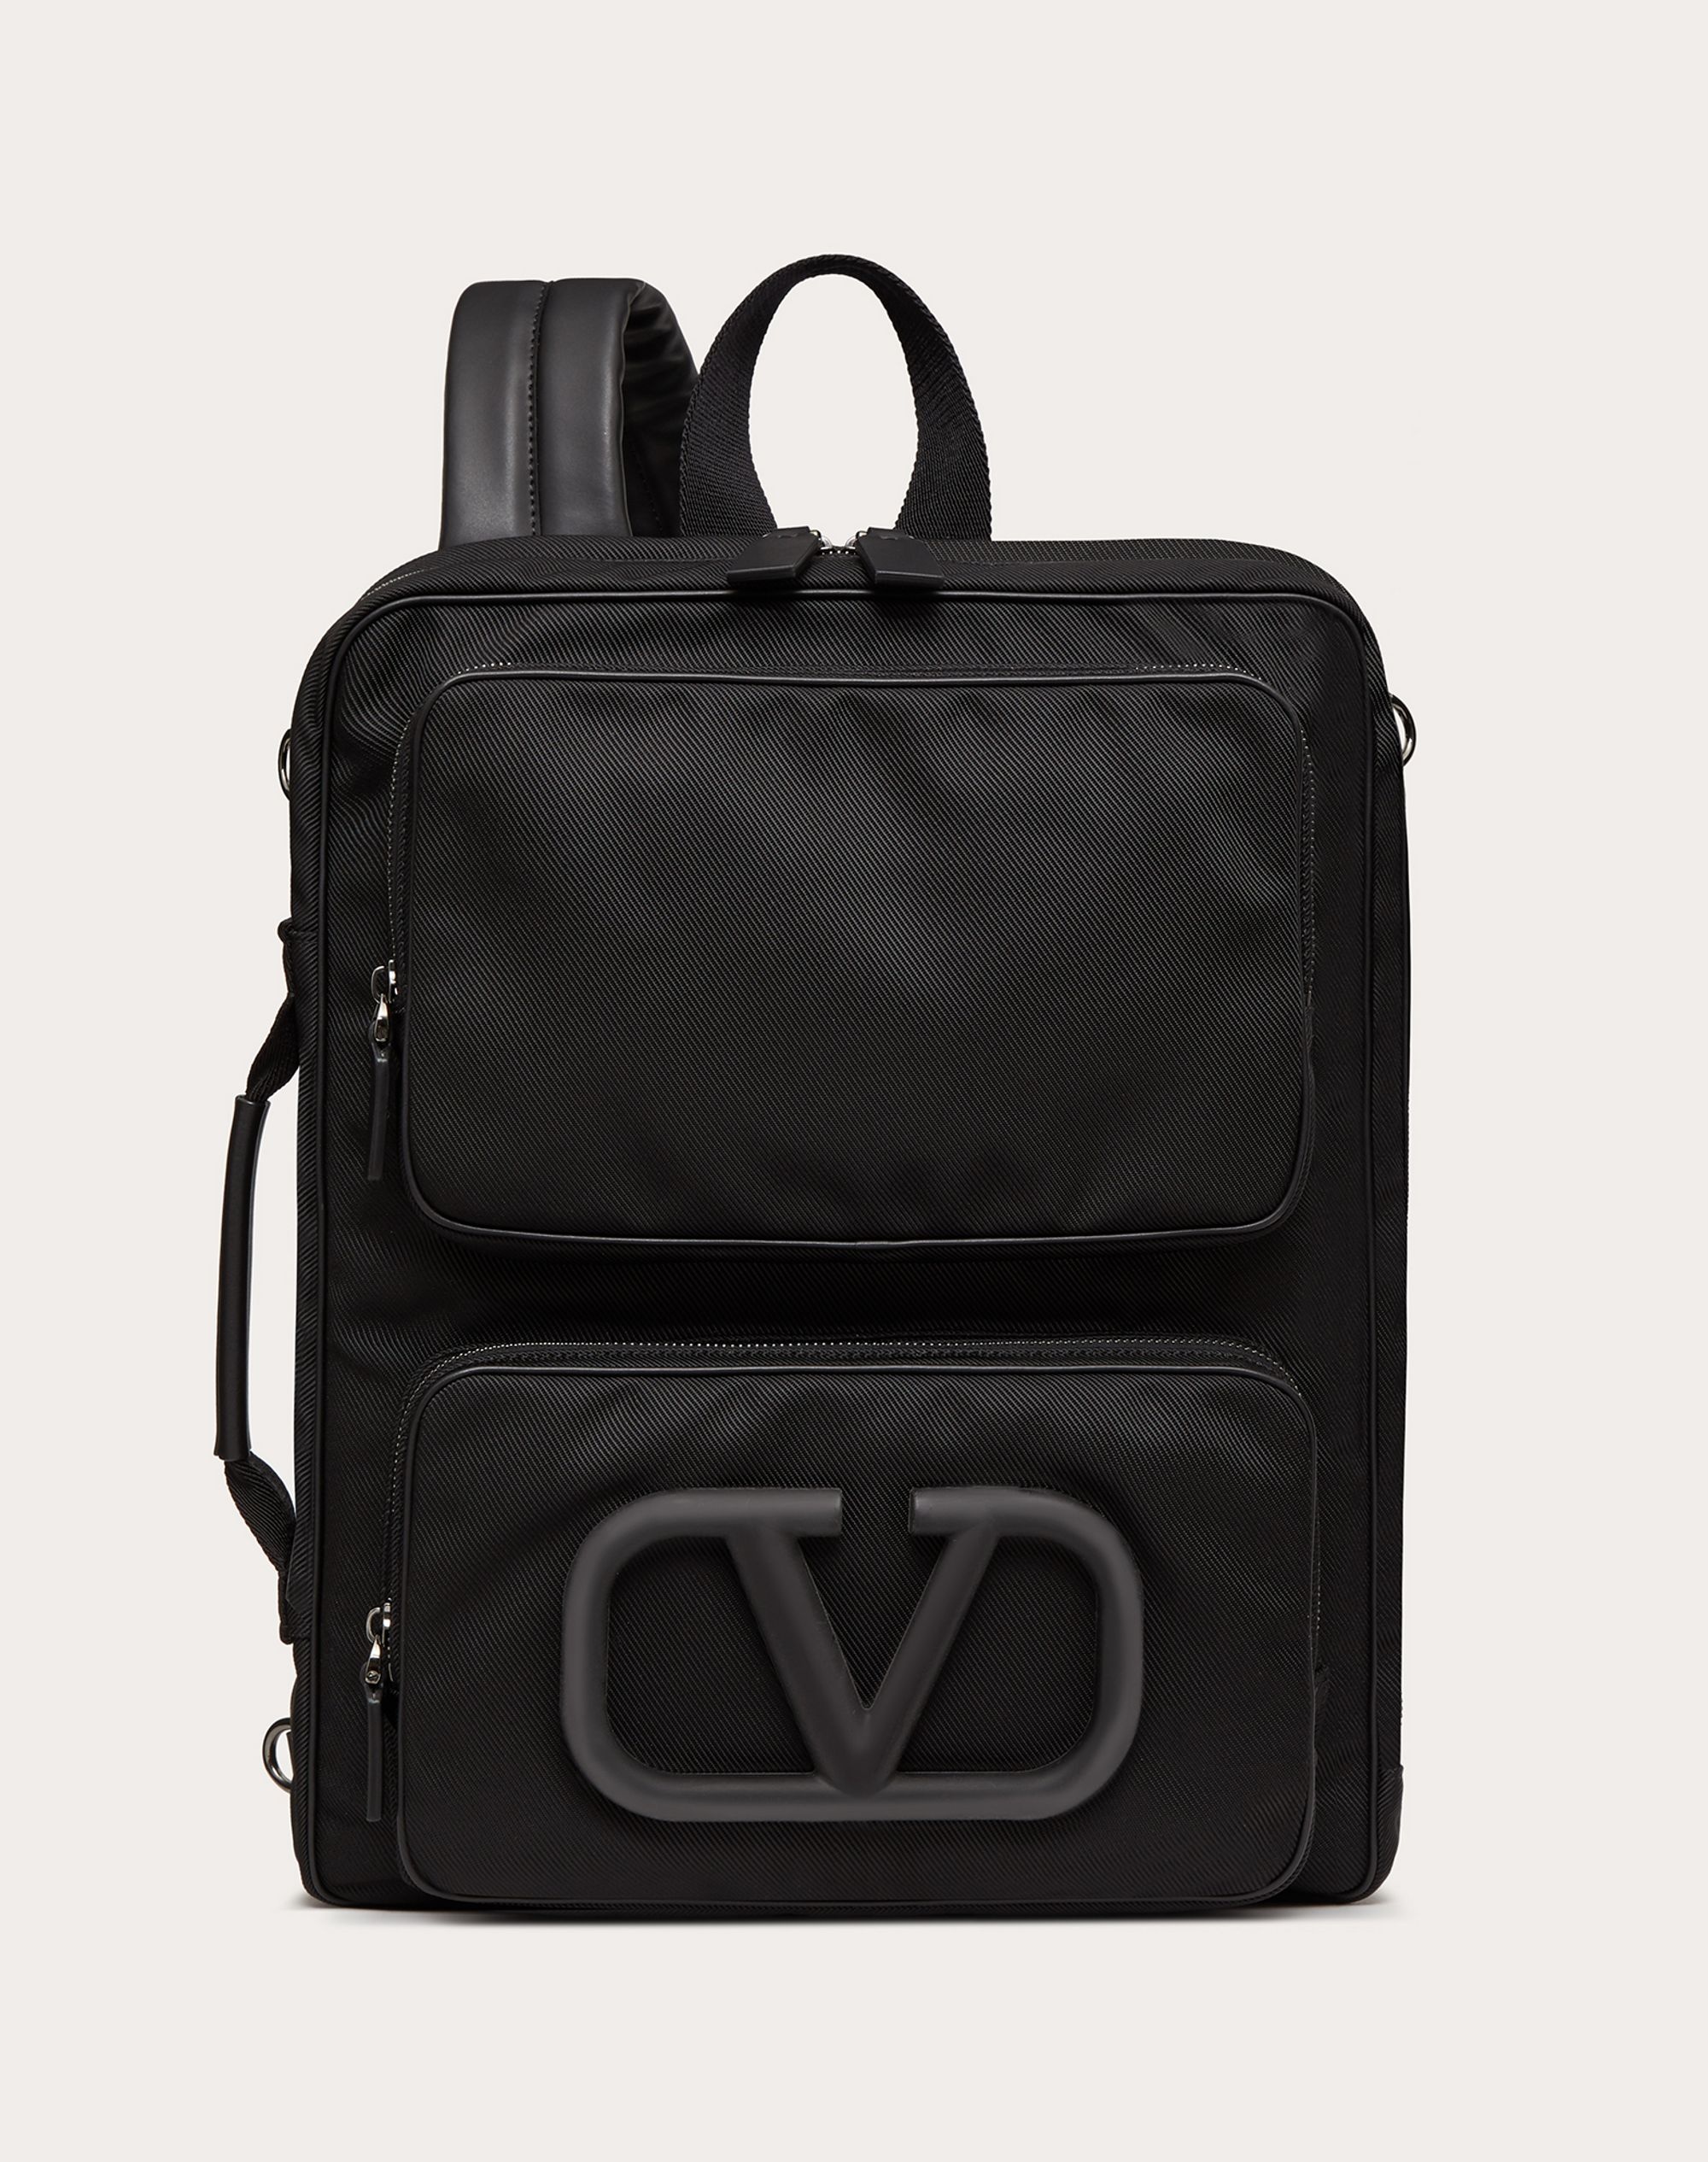 Supervee Backpack in Nylon - 1